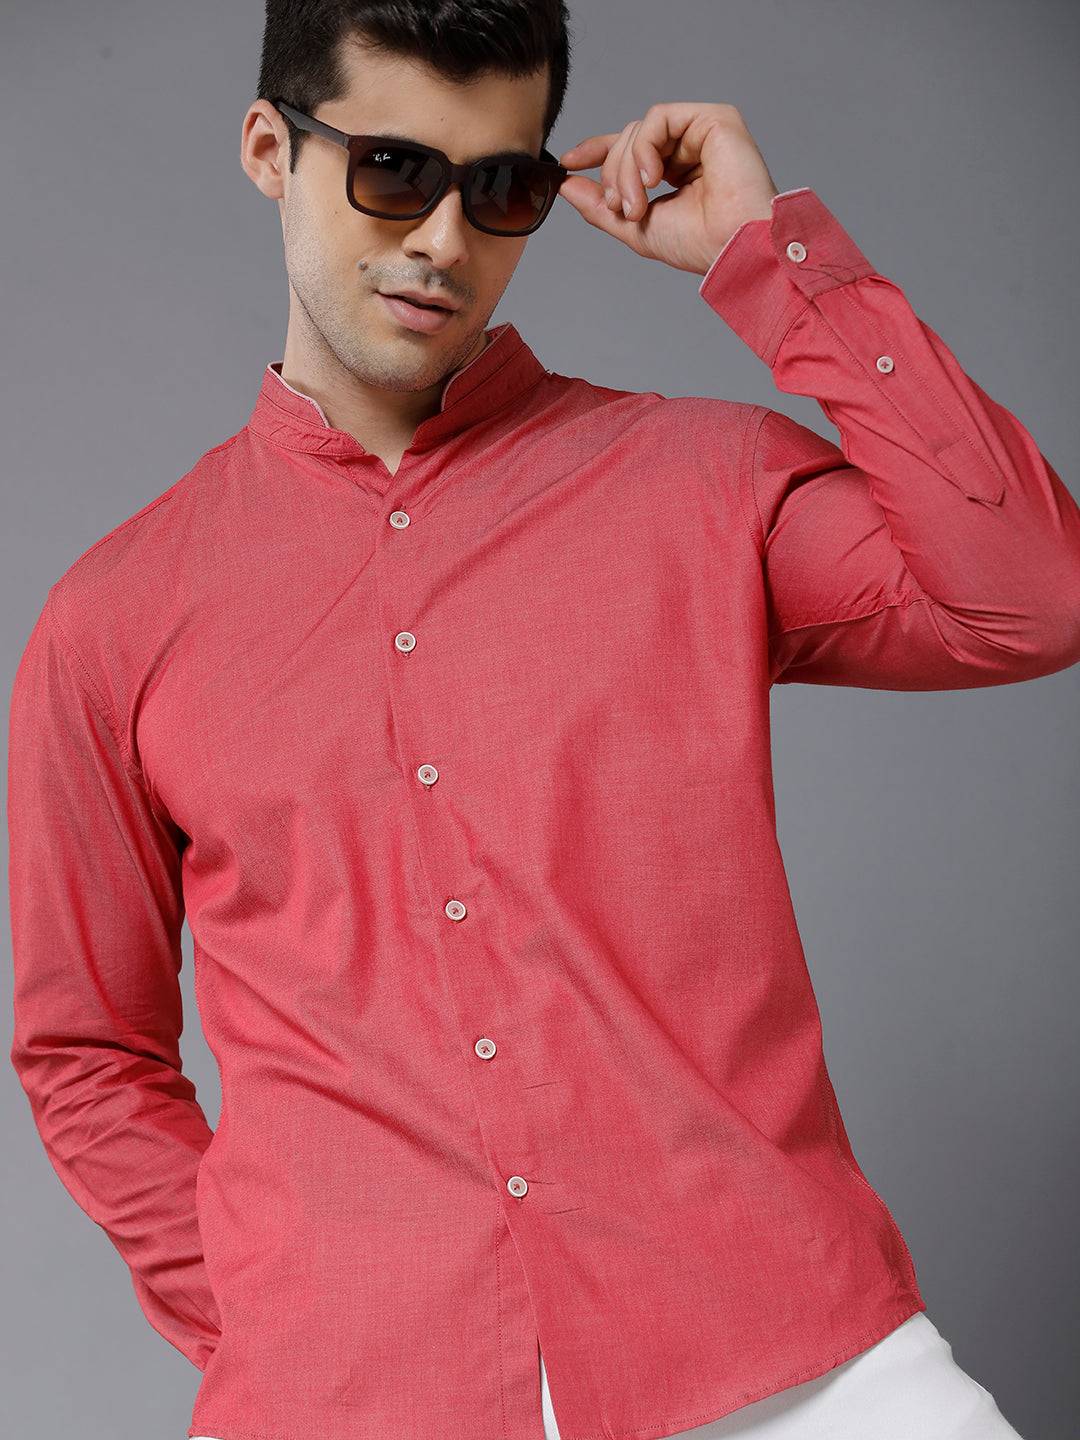 Pink mandarin collar shirt